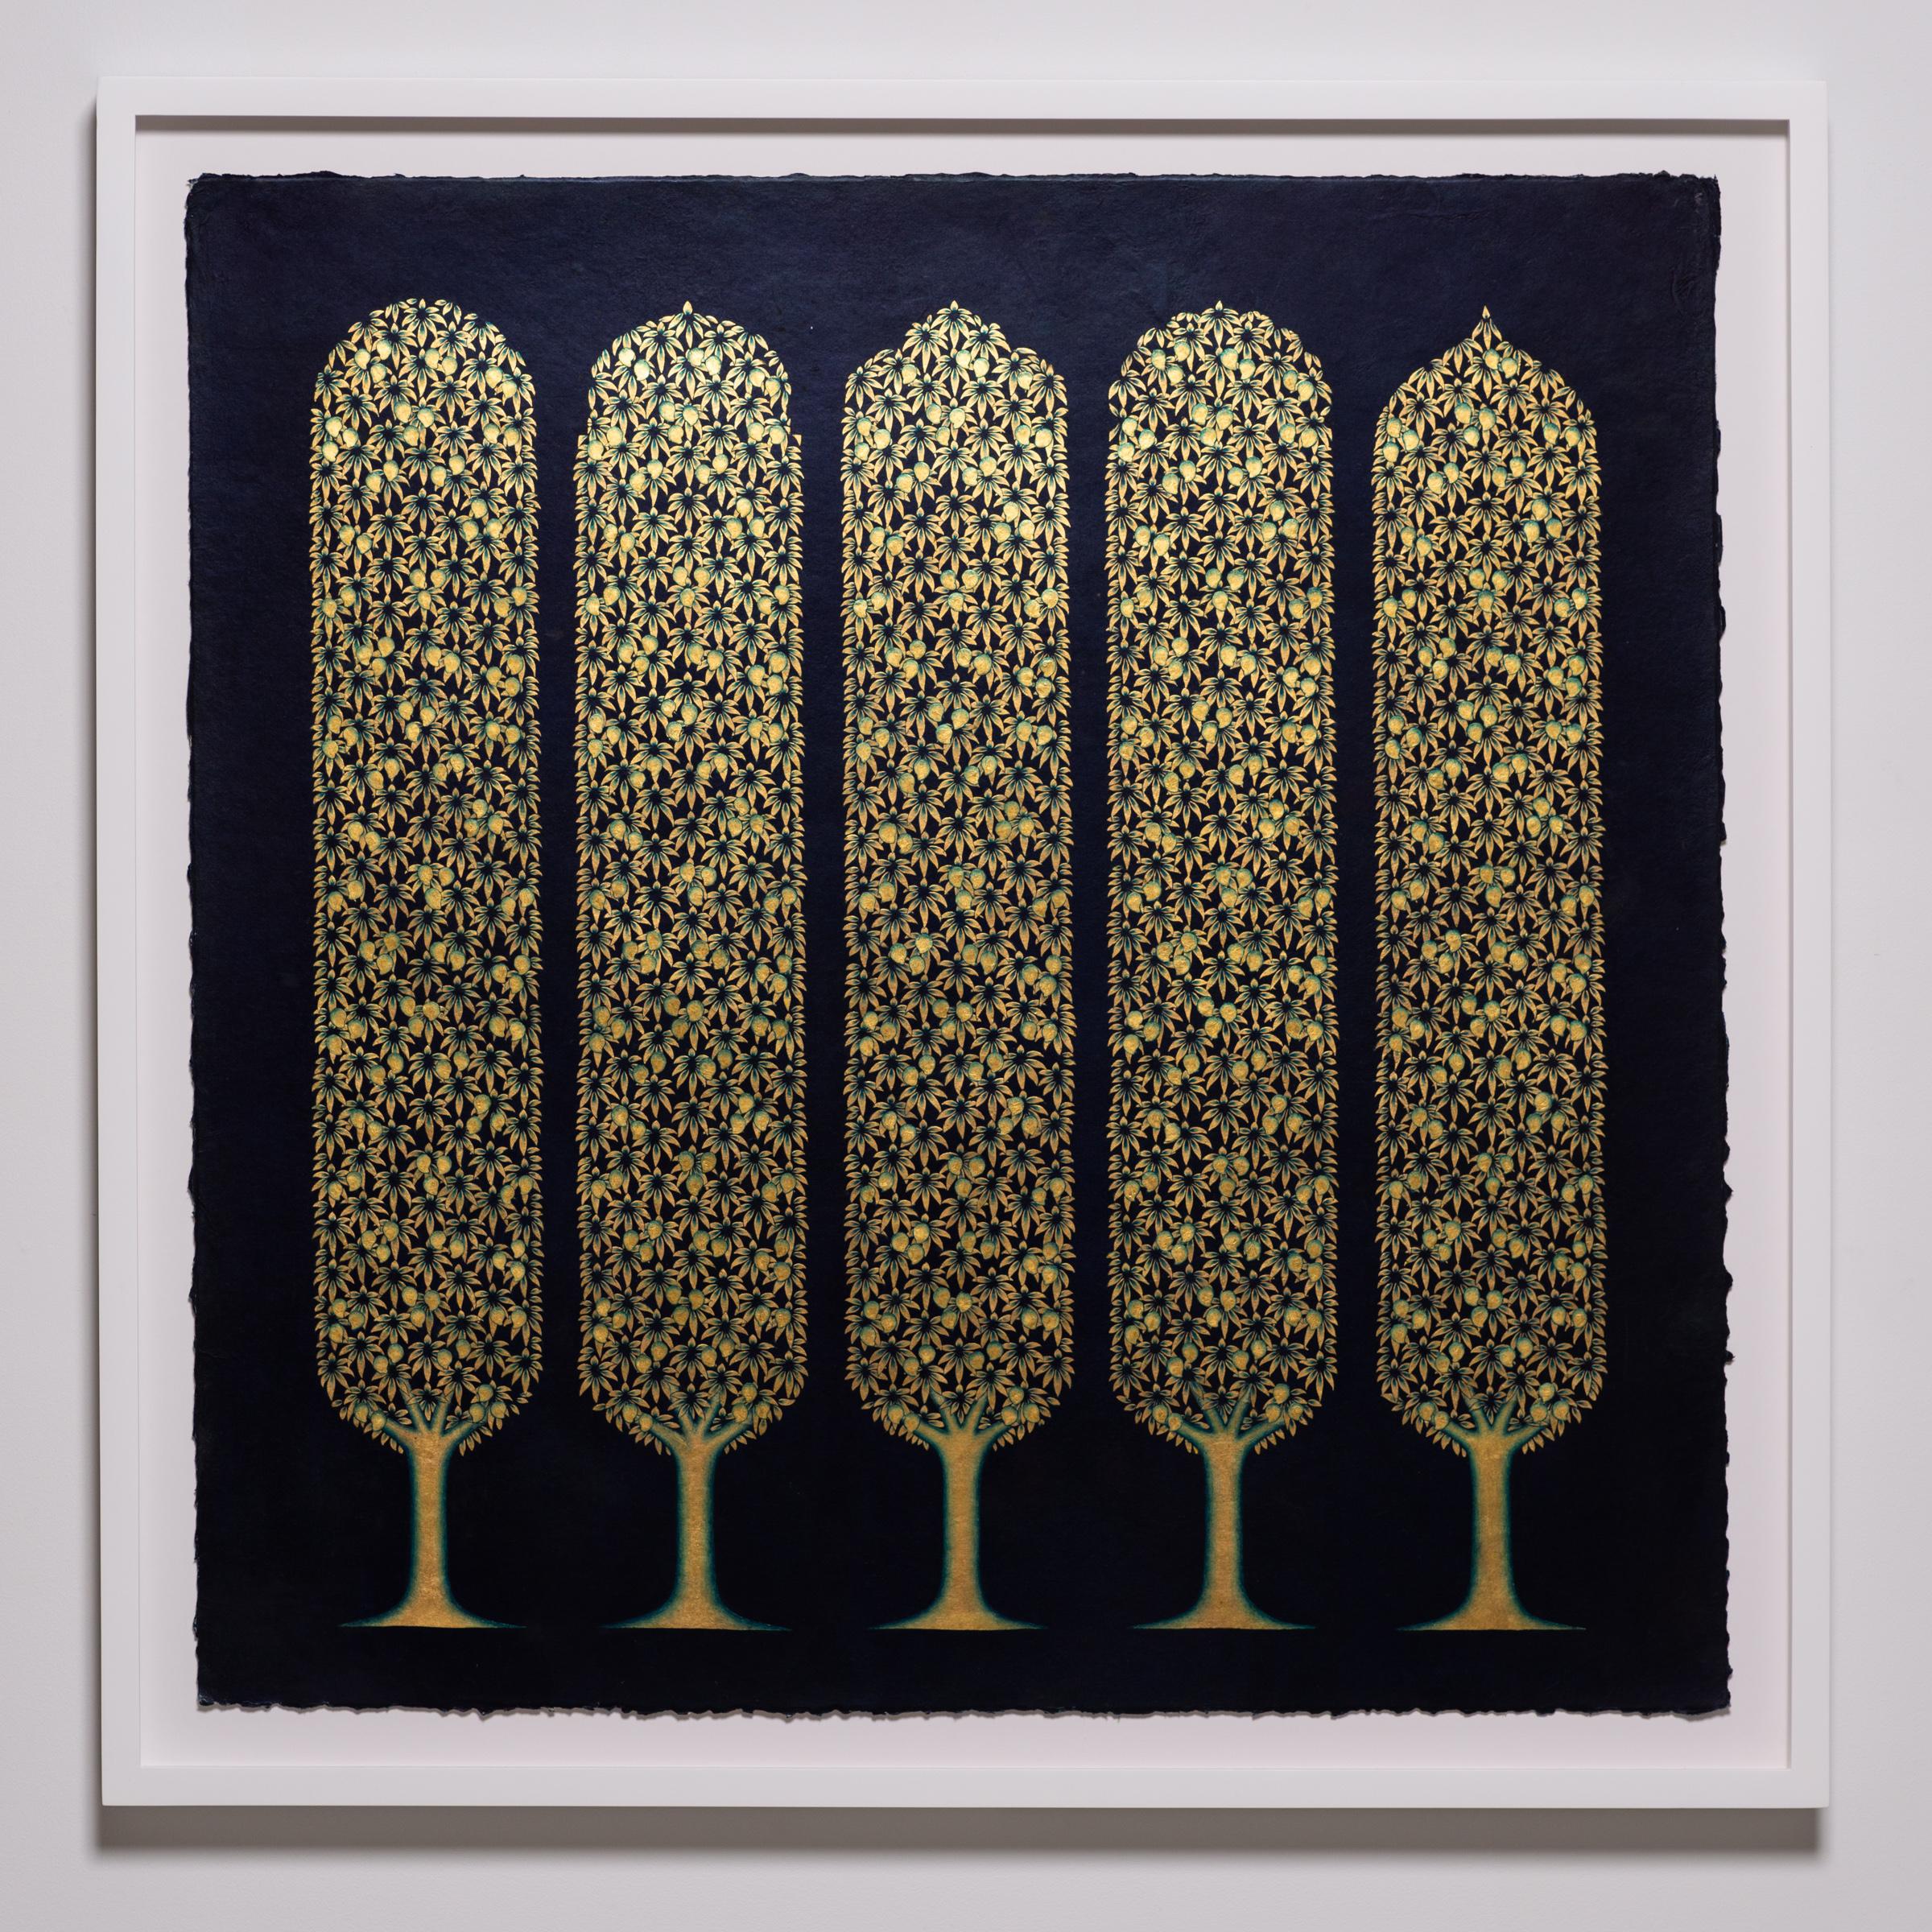 Olivia Fraser
Temple II, 2022
Pigment, gomme arabique et feuille d'or sur papier fait main
35 x 35 pouces
88.9 x 88.9 cm
OF041

Olivia Fraser (née en 1965 à Londres) est une artiste basée à Delhi, connue pour ses peintures incorporant des motifs